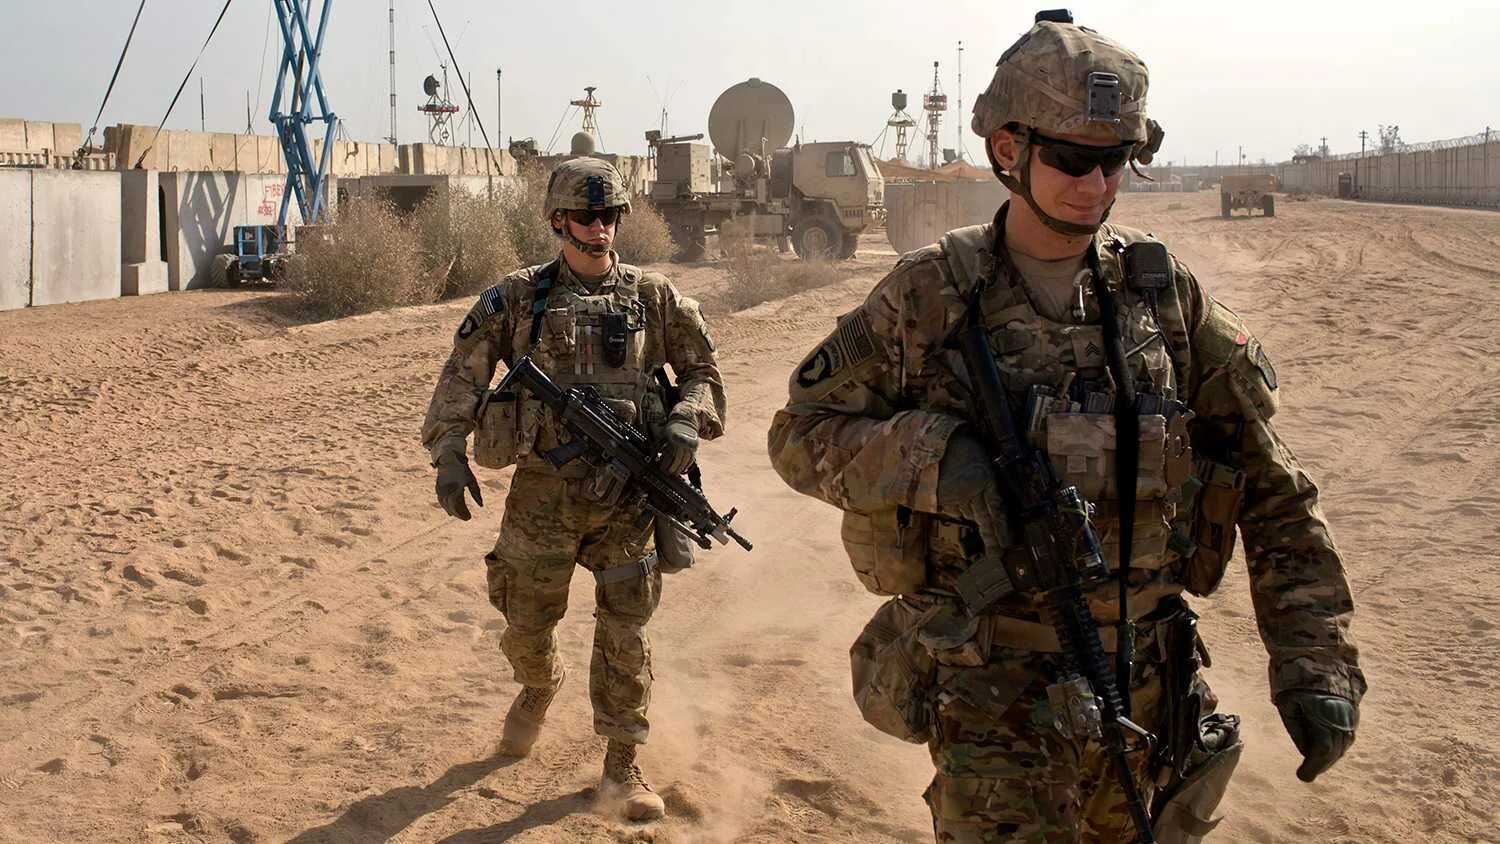 Нато в ираке. Солдат армии США В Ираке 2003.